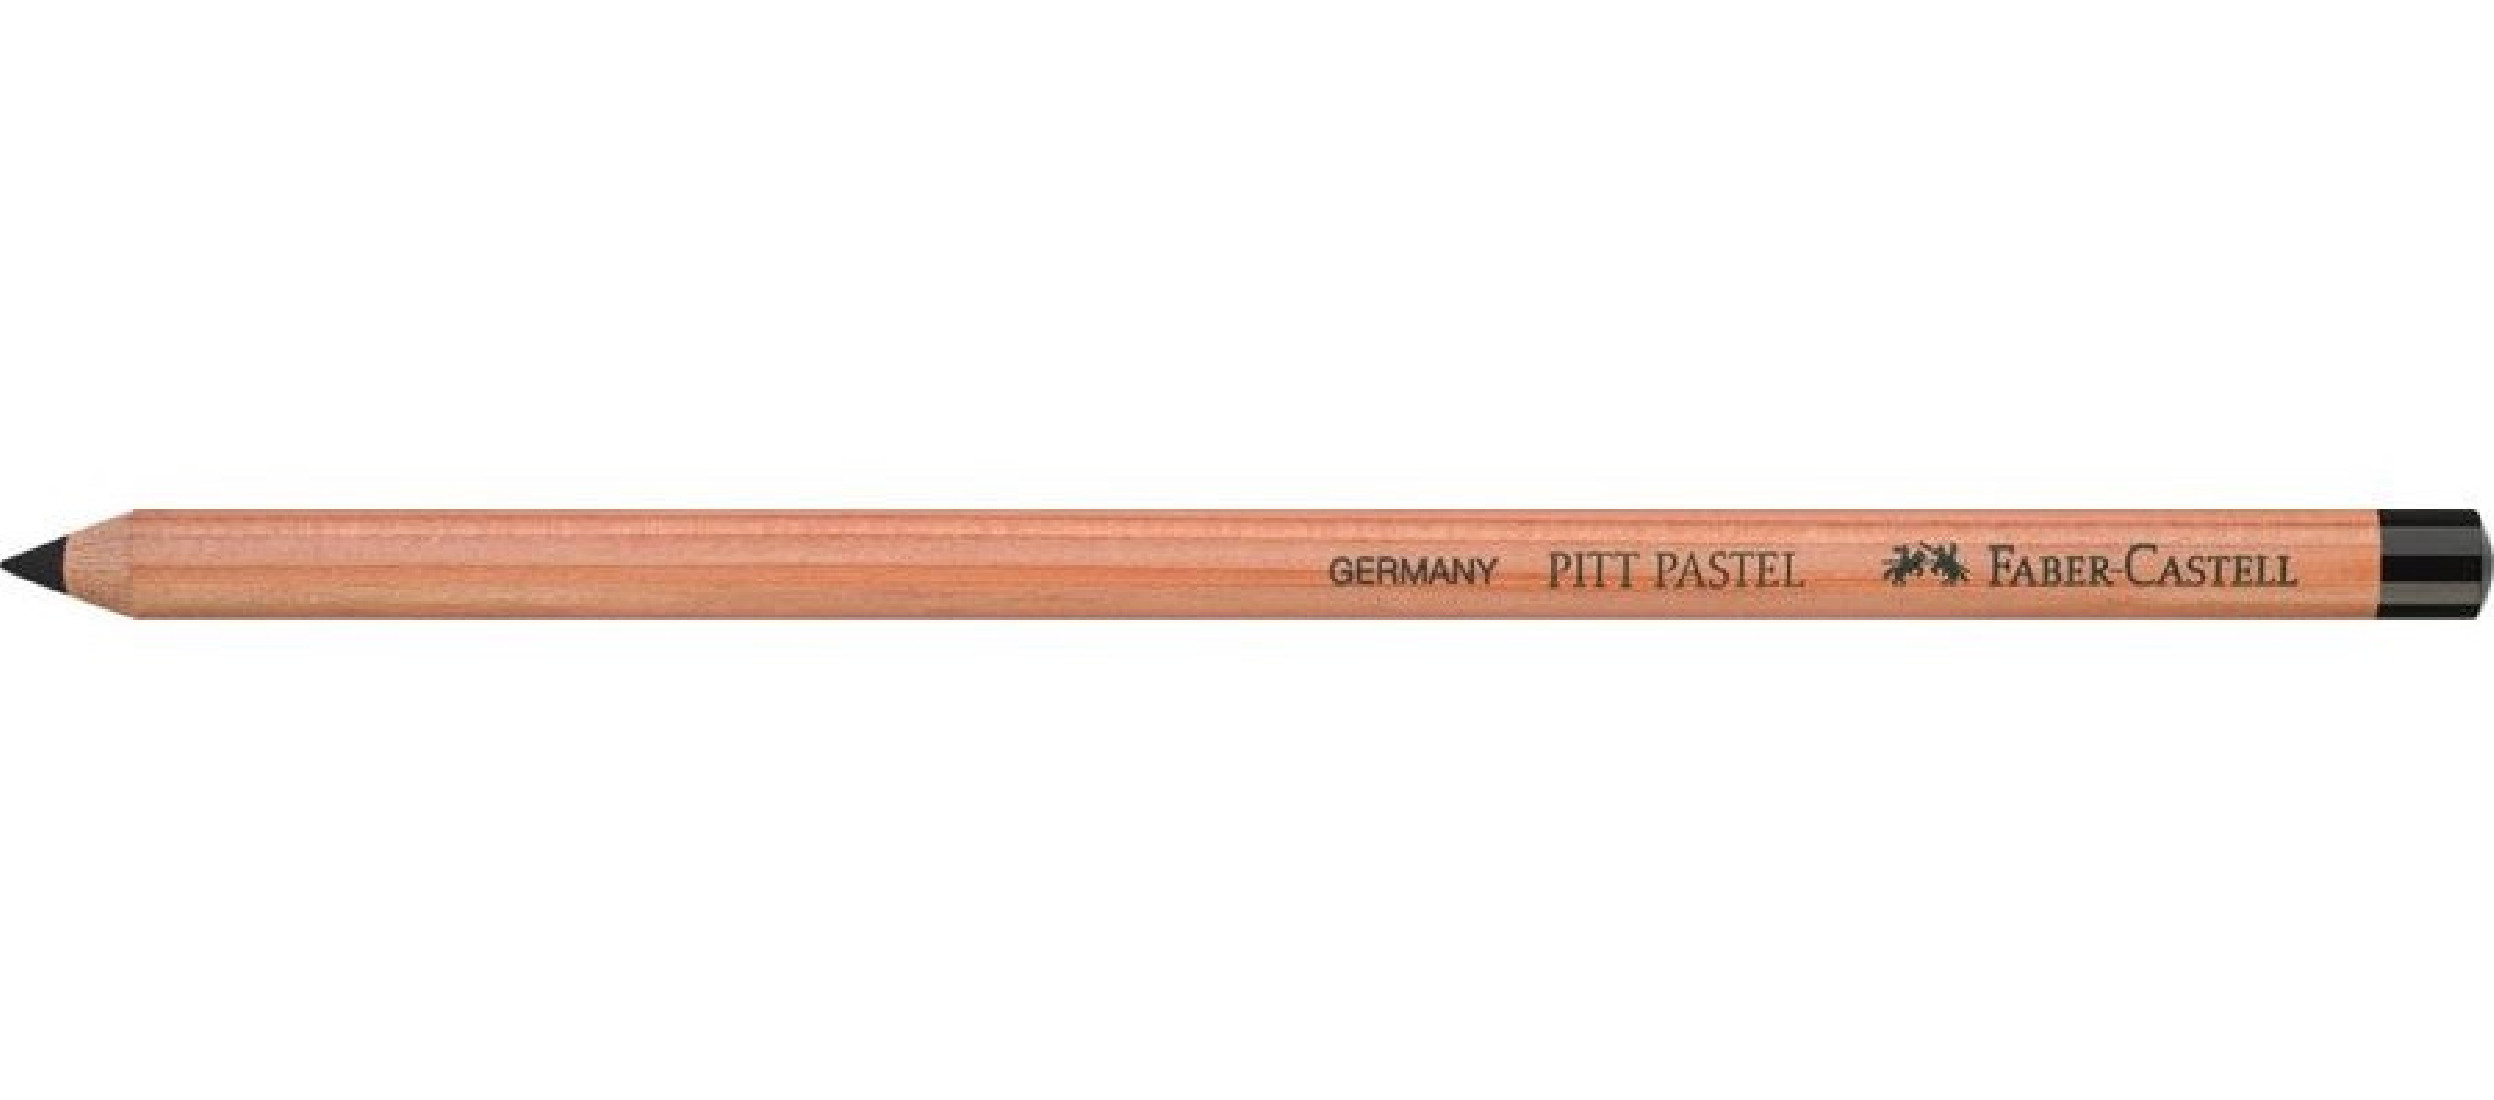 Ξυλομπογιά Pitt Pastel Χρώματος 199 Black 112299 Faber Castell